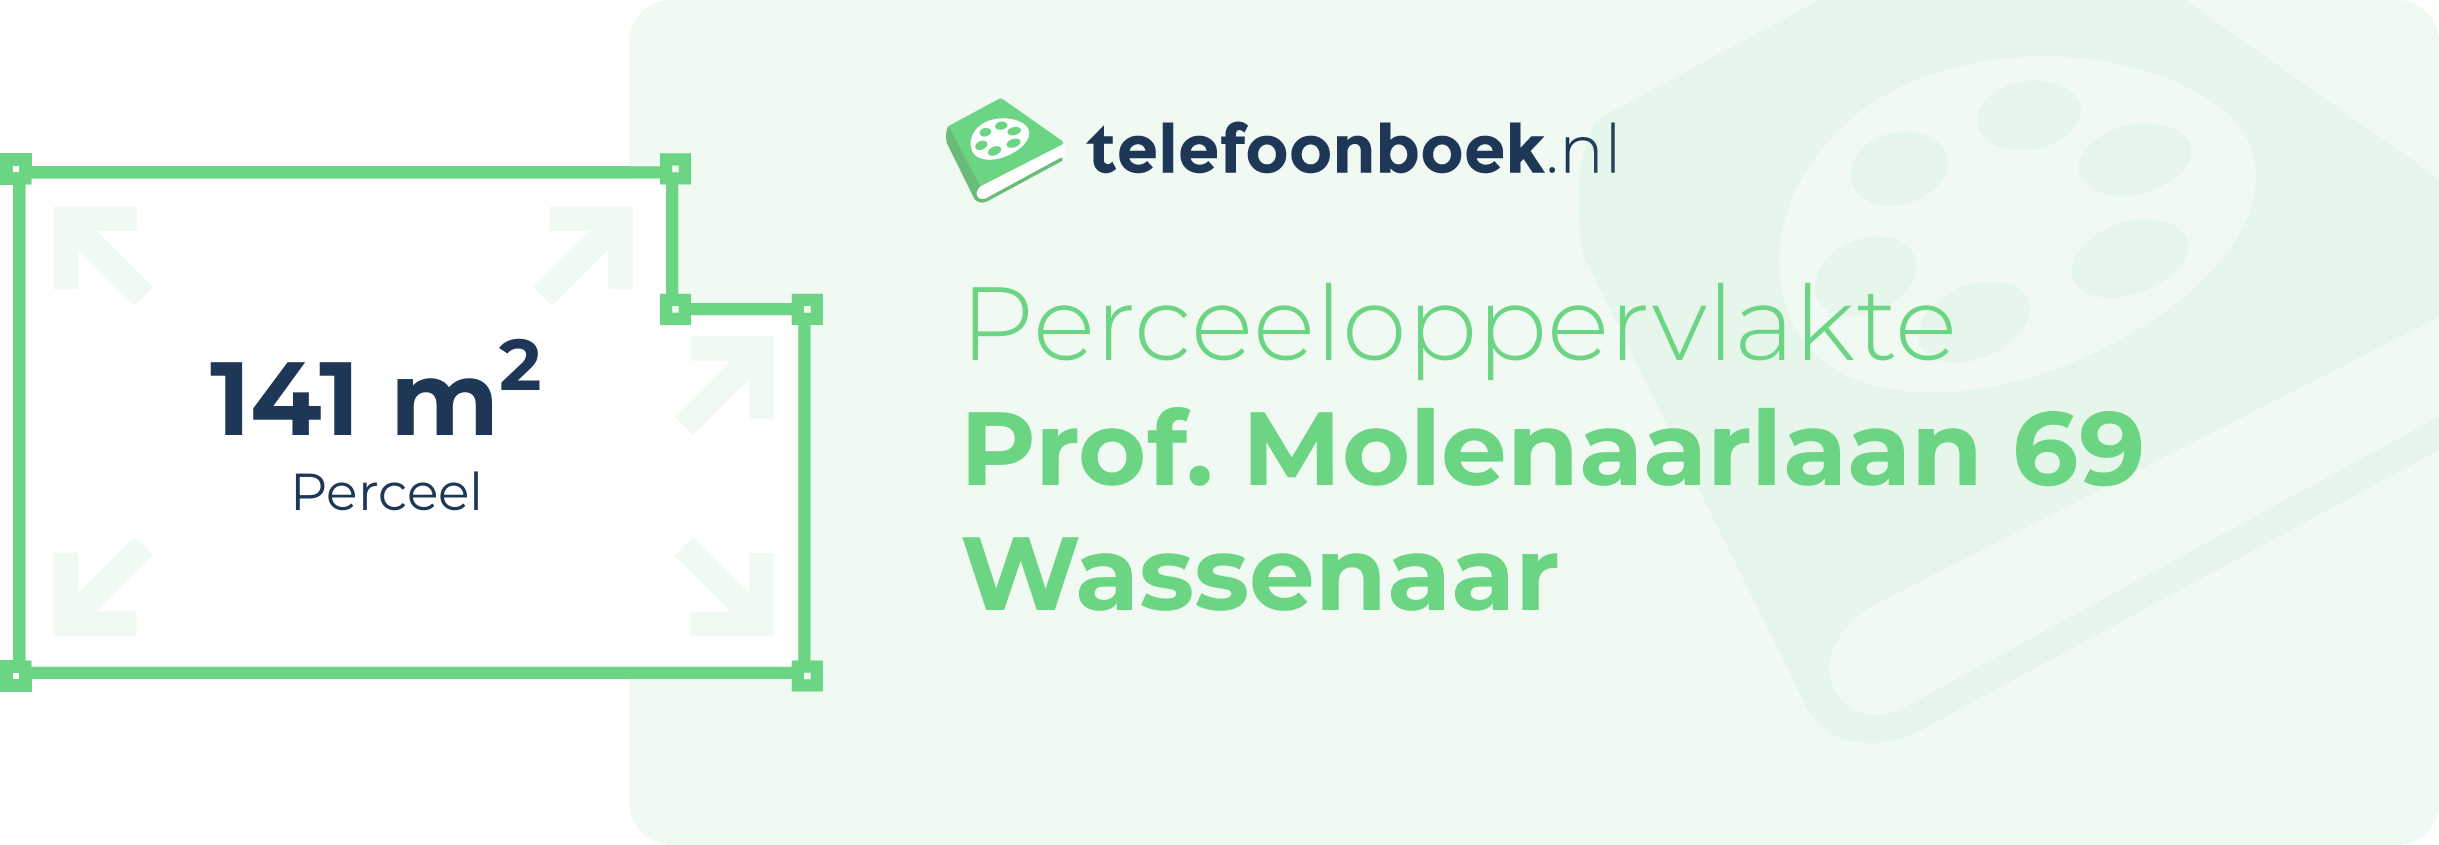 Perceeloppervlakte Prof. Molenaarlaan 69 Wassenaar